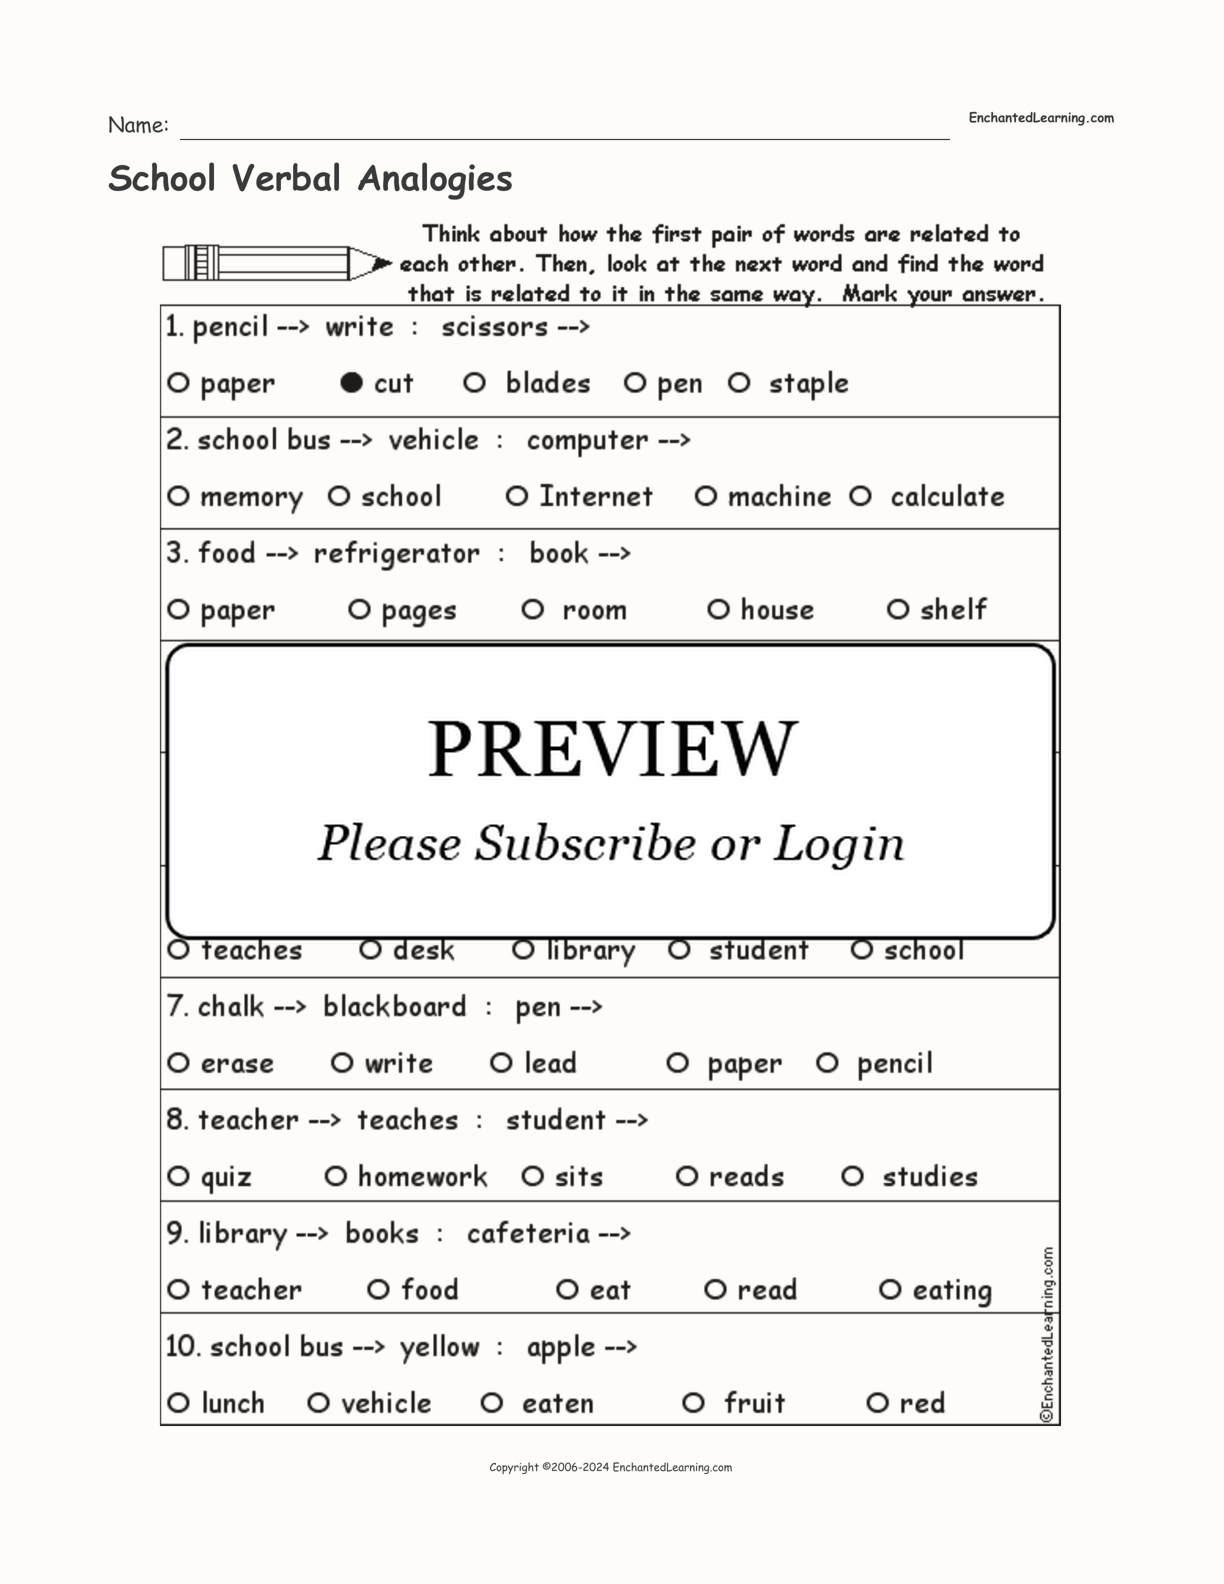 School Verbal Analogies interactive worksheet page 1